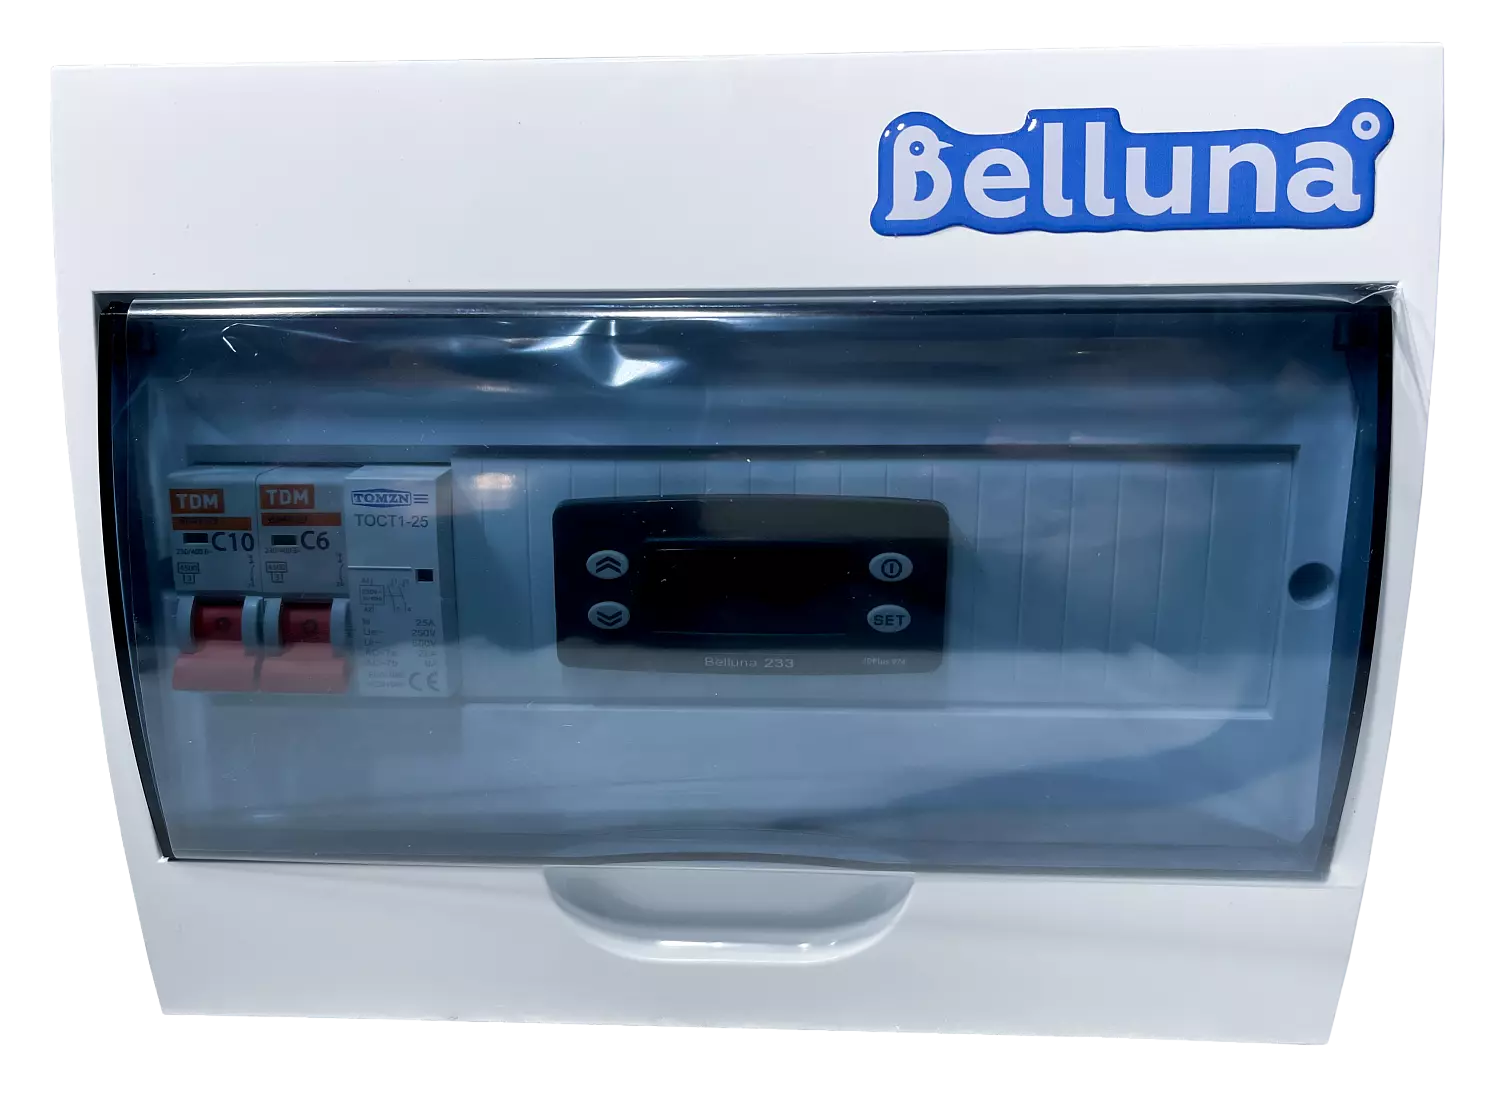 сплит-система Belluna U316 Омск